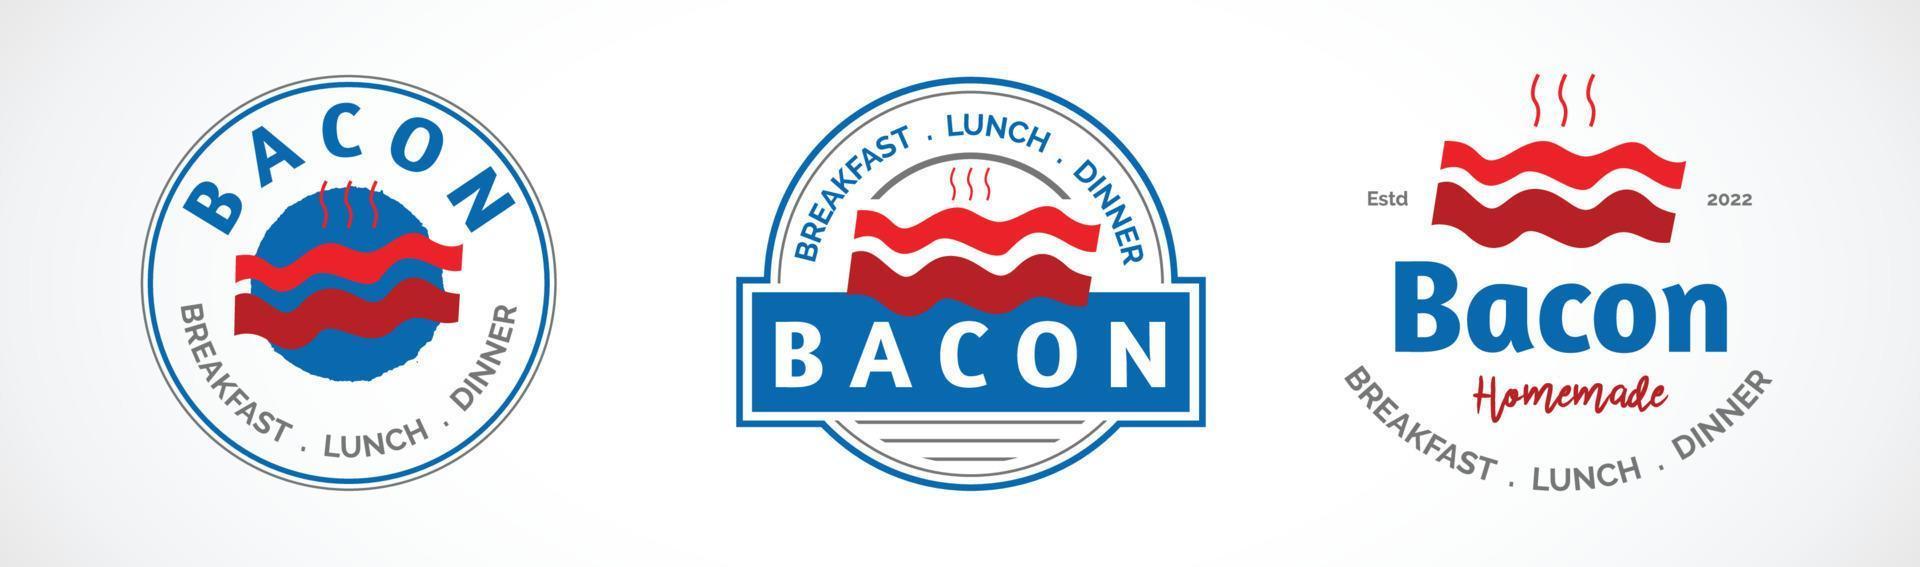 restaurant de logo de bacon vecteur